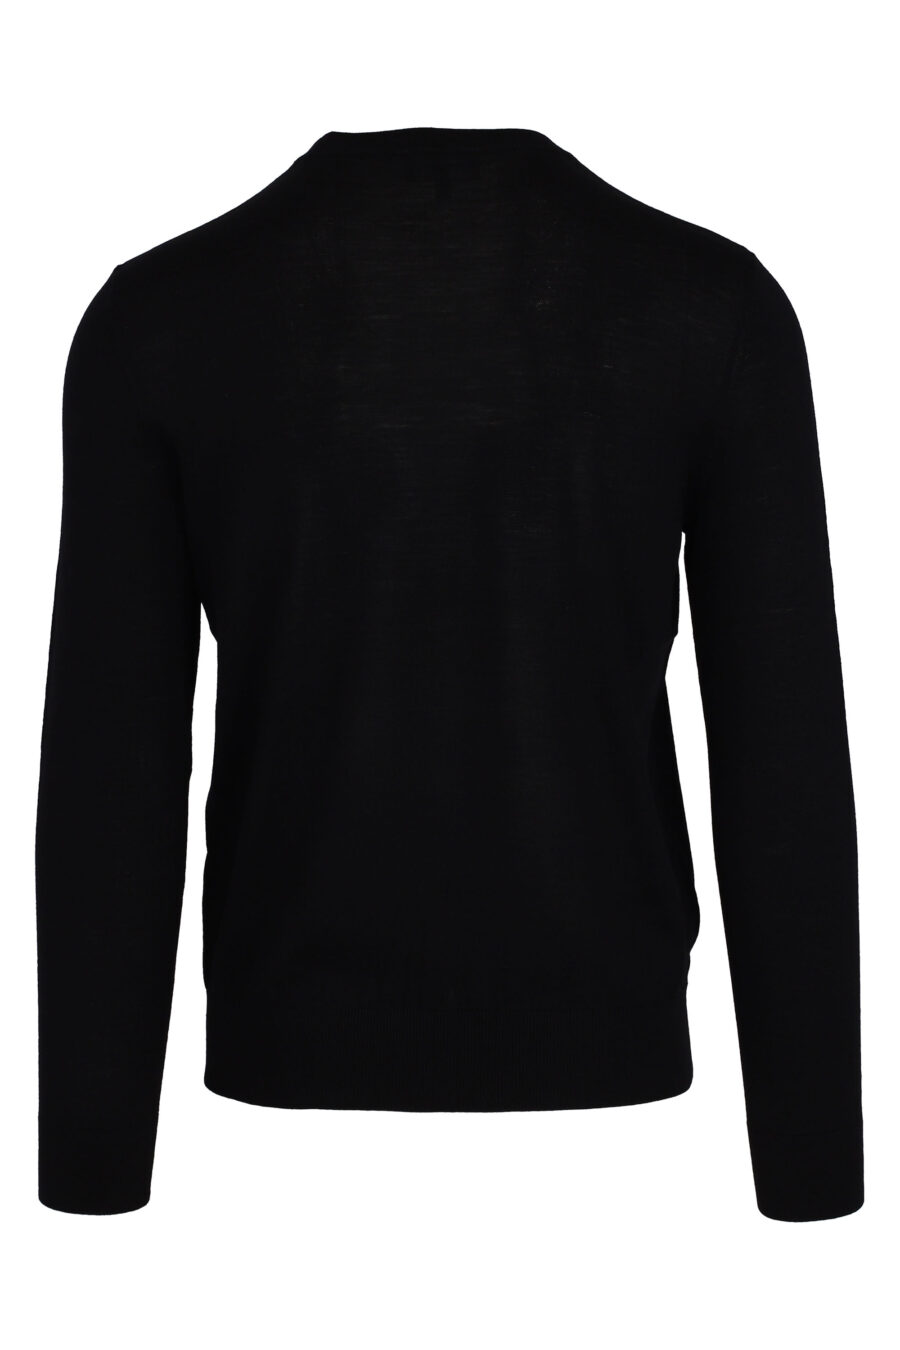 Schwarzer Pullover mit weißem Adler-Logo - IMG 4735